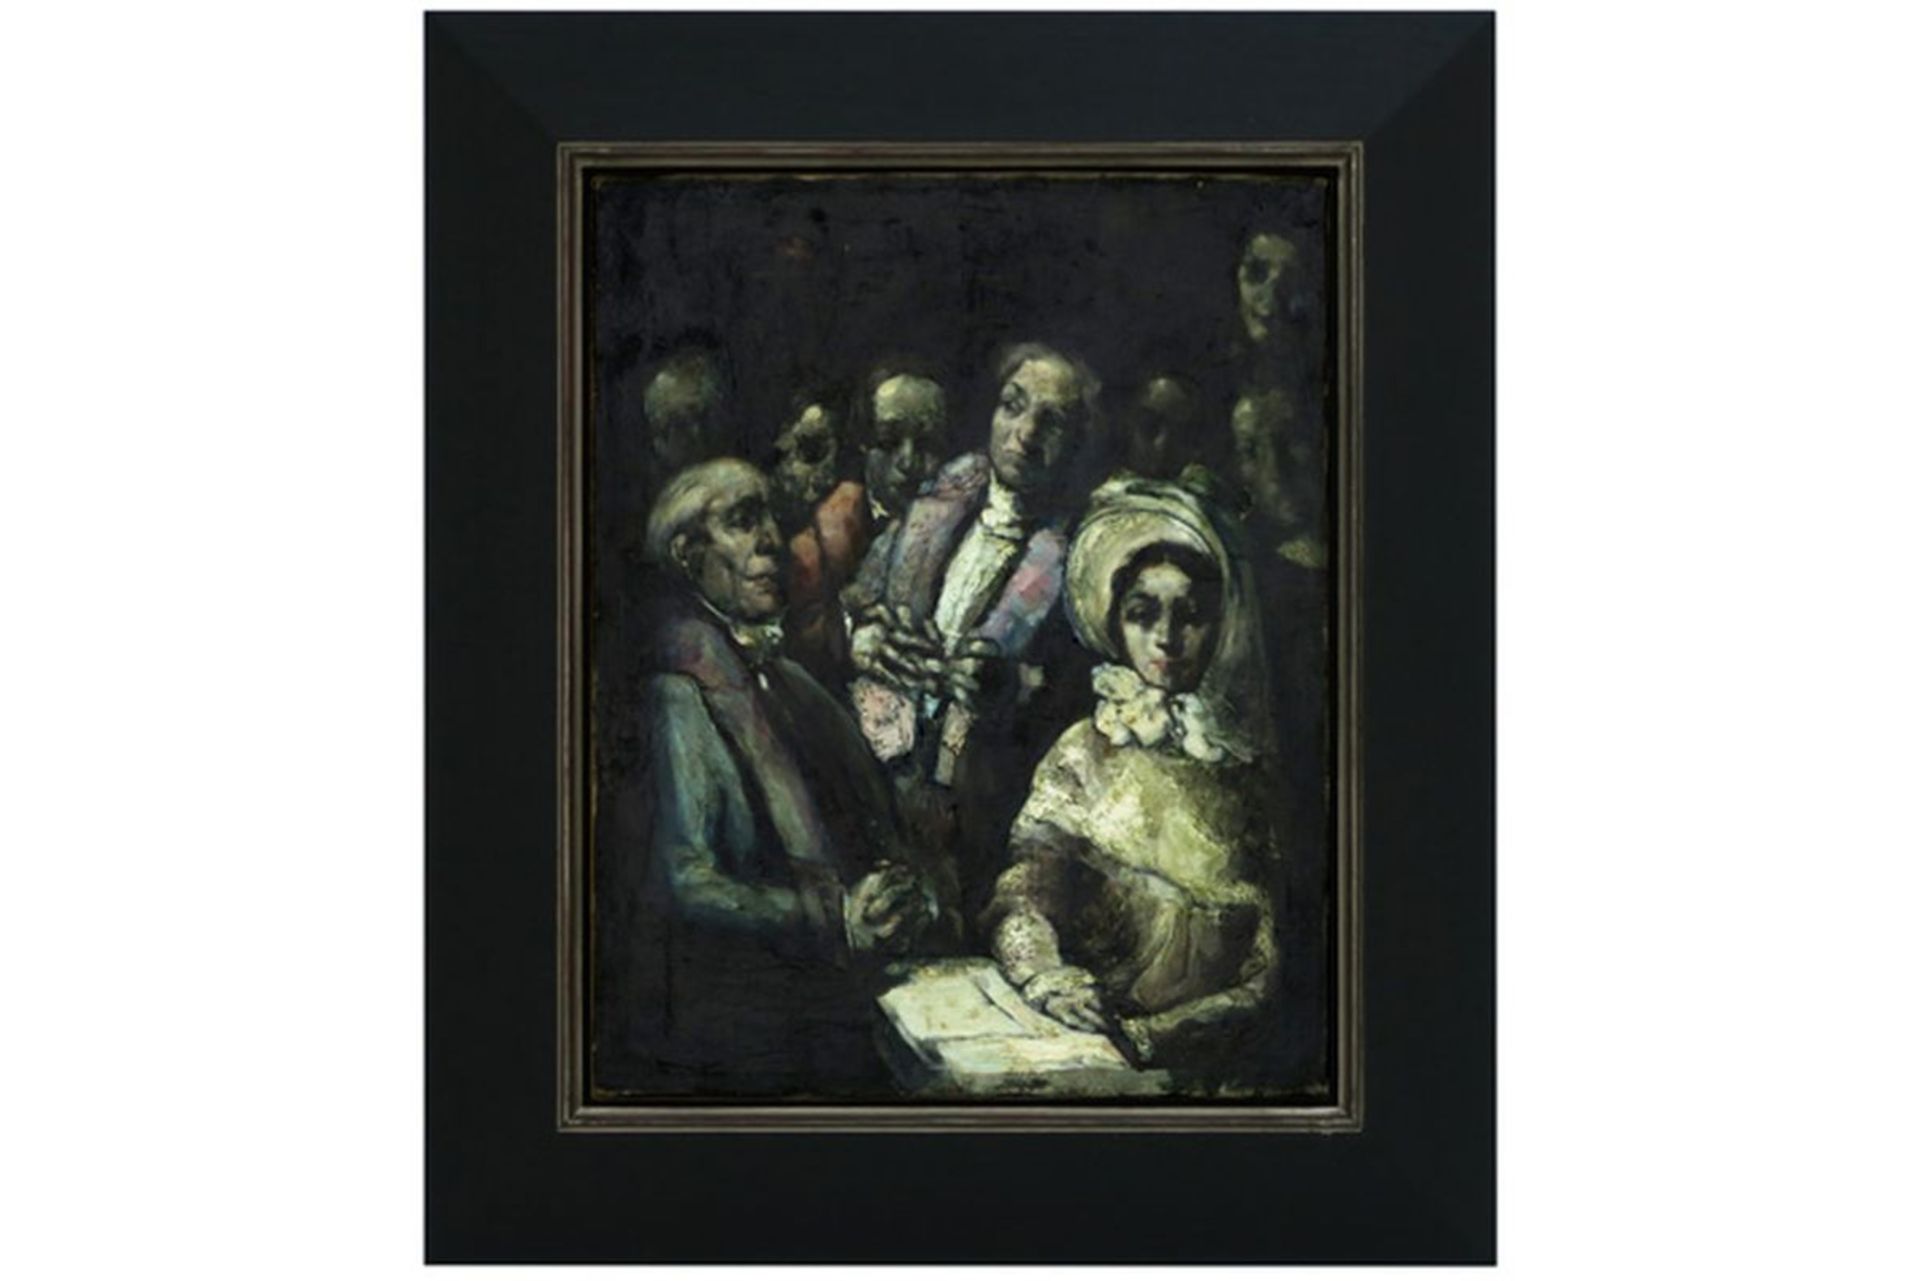 GLUCKMANN GREGORY (1898 - 1973) olieverfschilderij op doek : "De ceremonie" - 50 x [...]